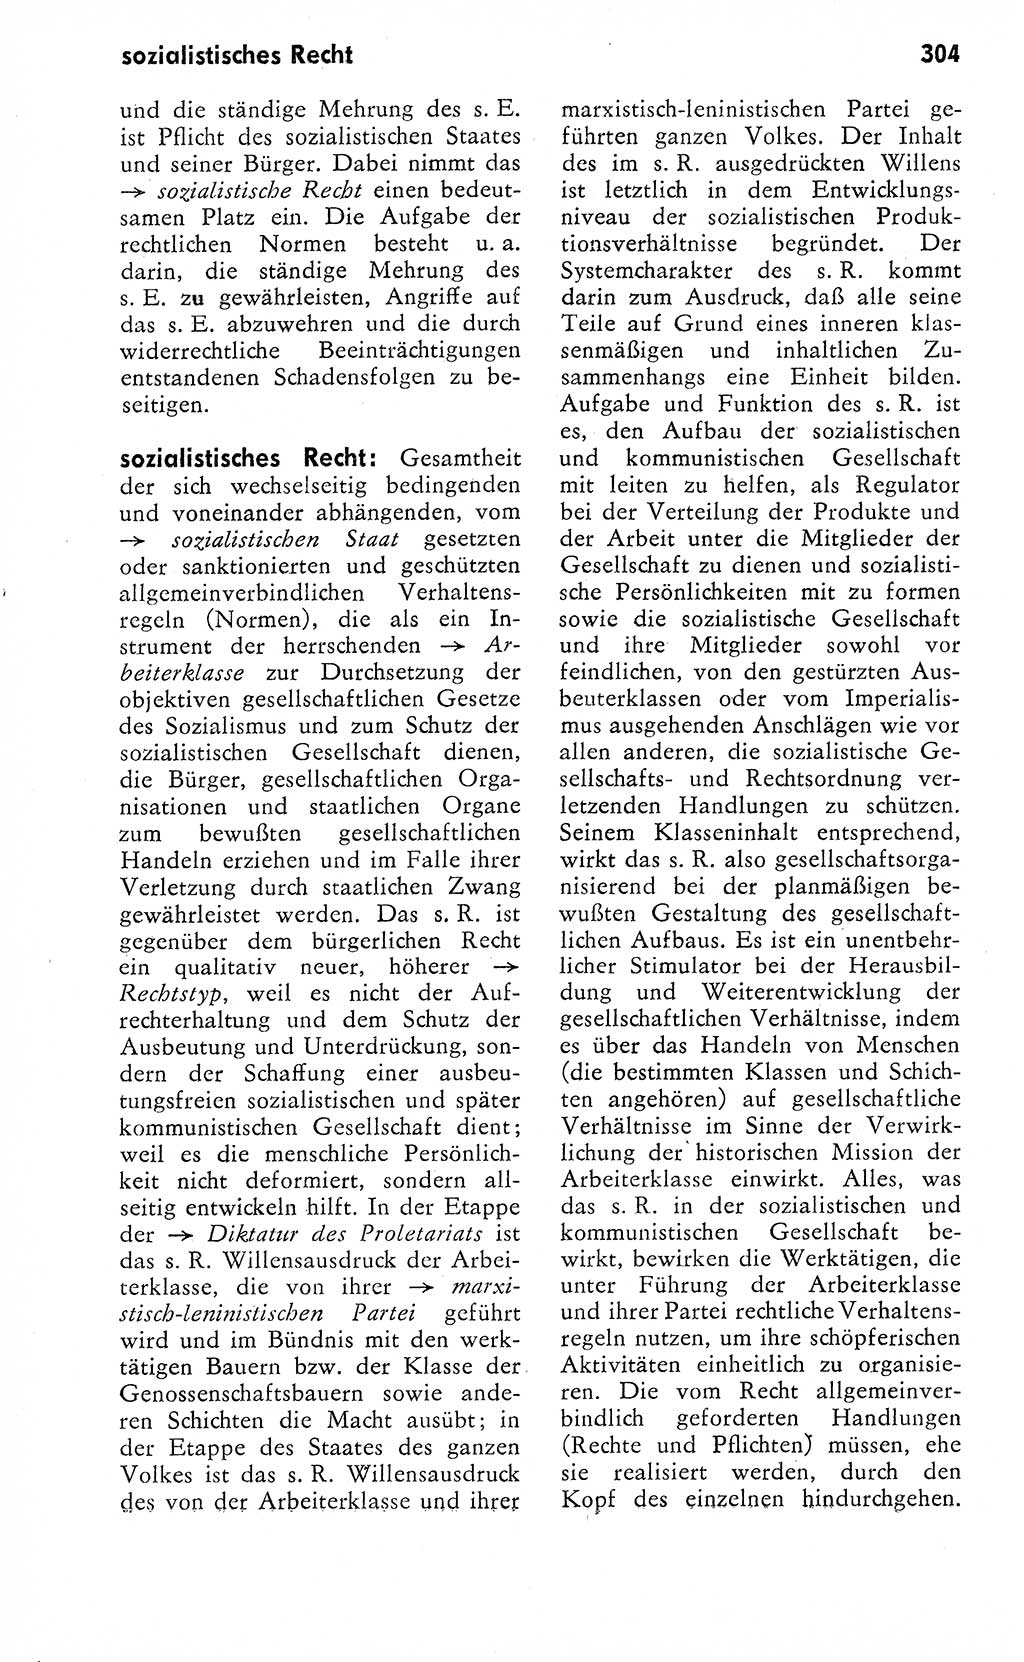 Wörterbuch zum sozialistischen Staat [Deutsche Demokratische Republik (DDR)] 1974, Seite 304 (Wb. soz. St. DDR 1974, S. 304)